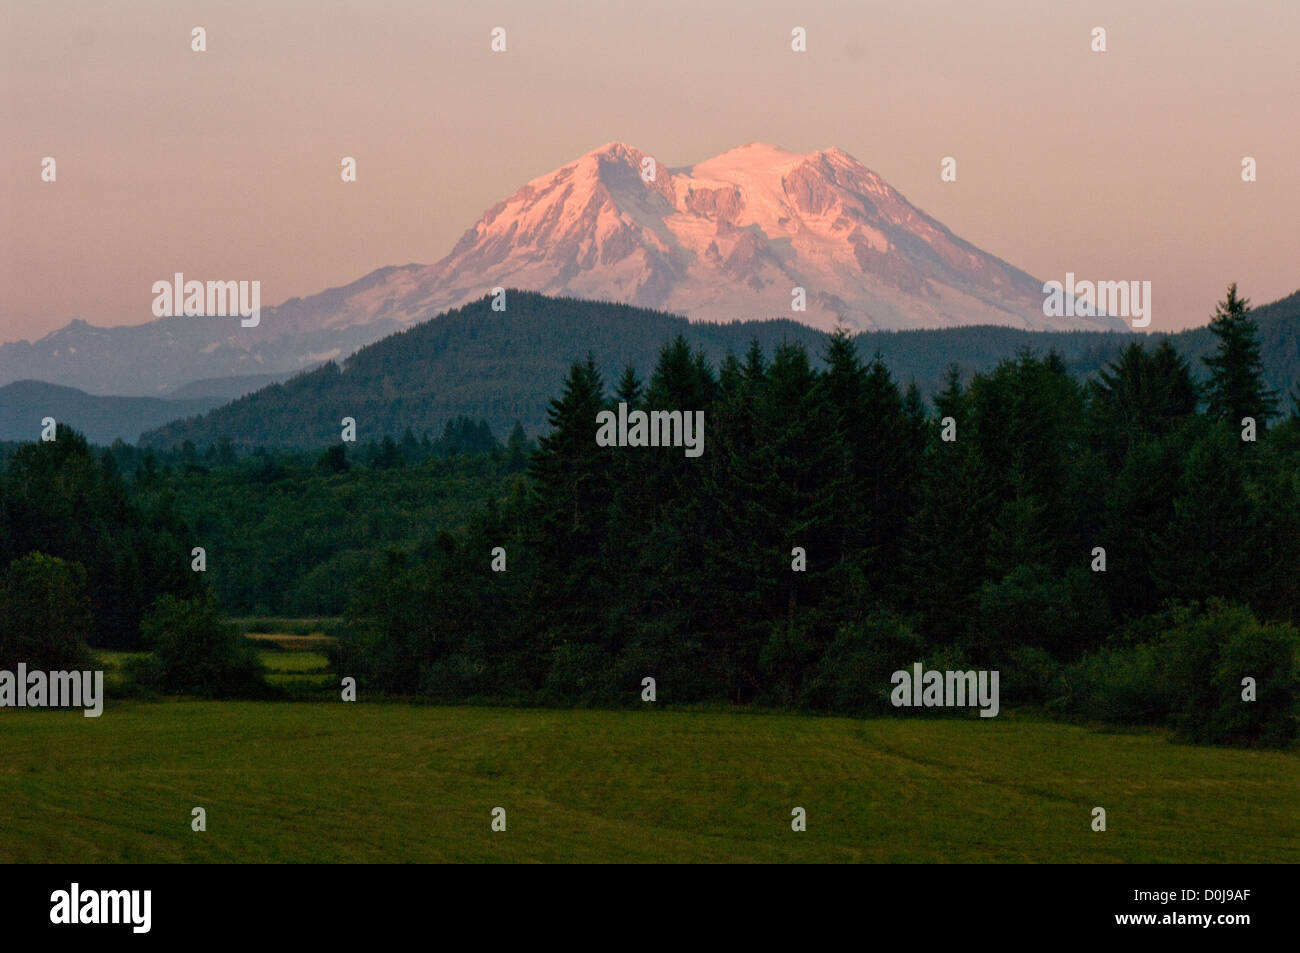 Le majestueux Mt. Rainier dans l'État de Washington est allumé dans la profondeur des teintes de rose et d'orange au coucher du soleil. Banque D'Images